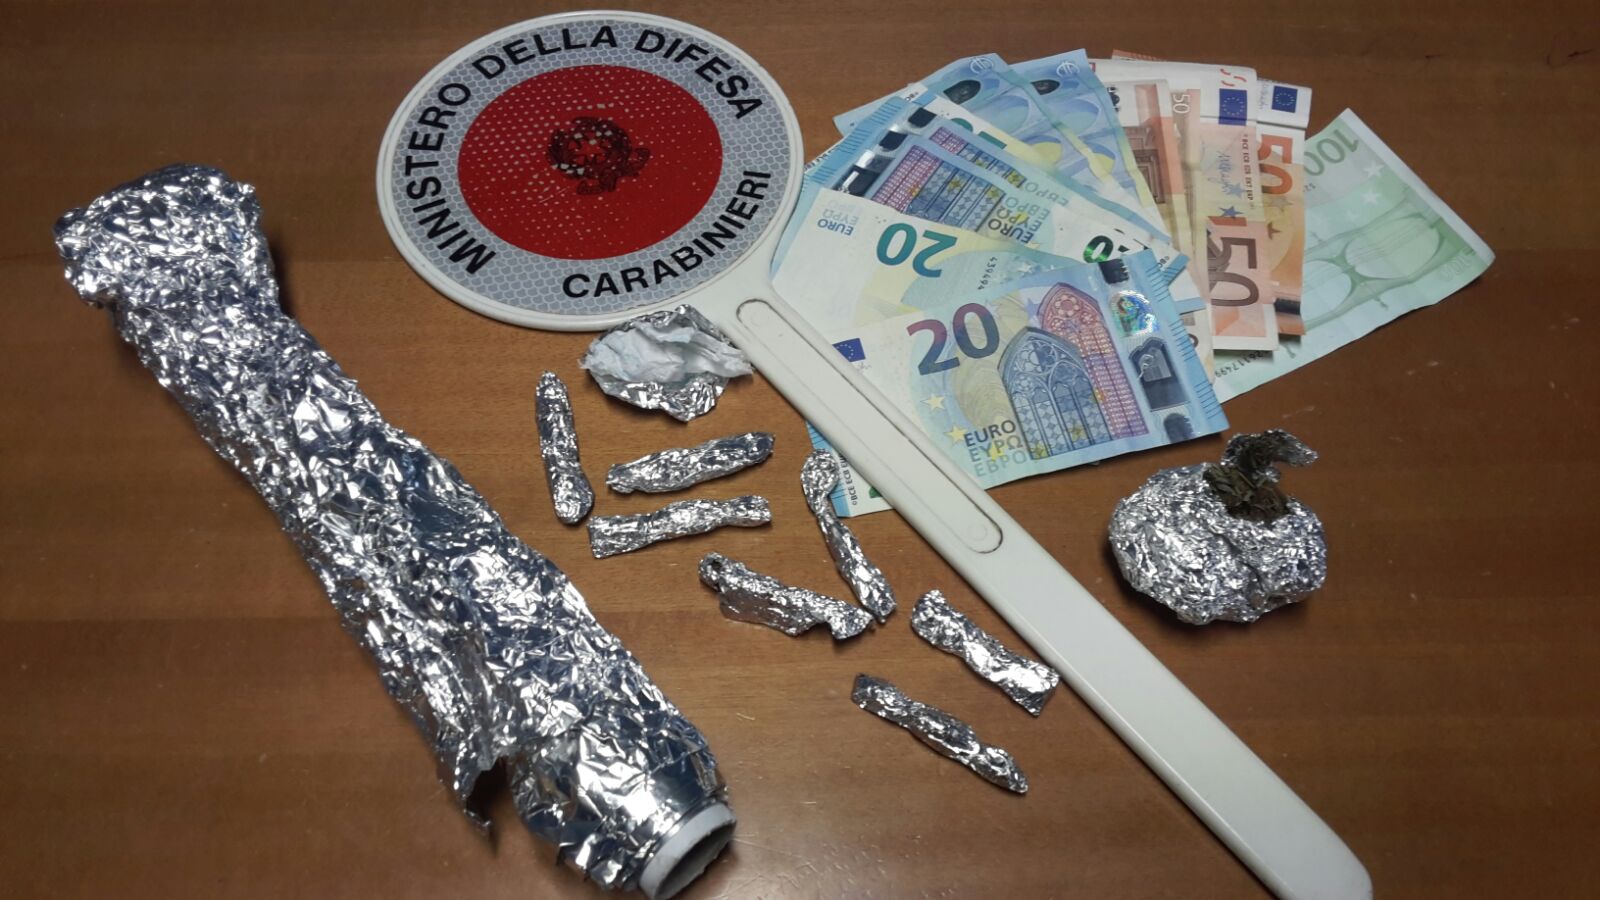 Brolo – Due arresti ed un deferimento per detenzione ai fini di spaccio di sostanze stupefacenti da parte dei Carabinieri della locale Stazione